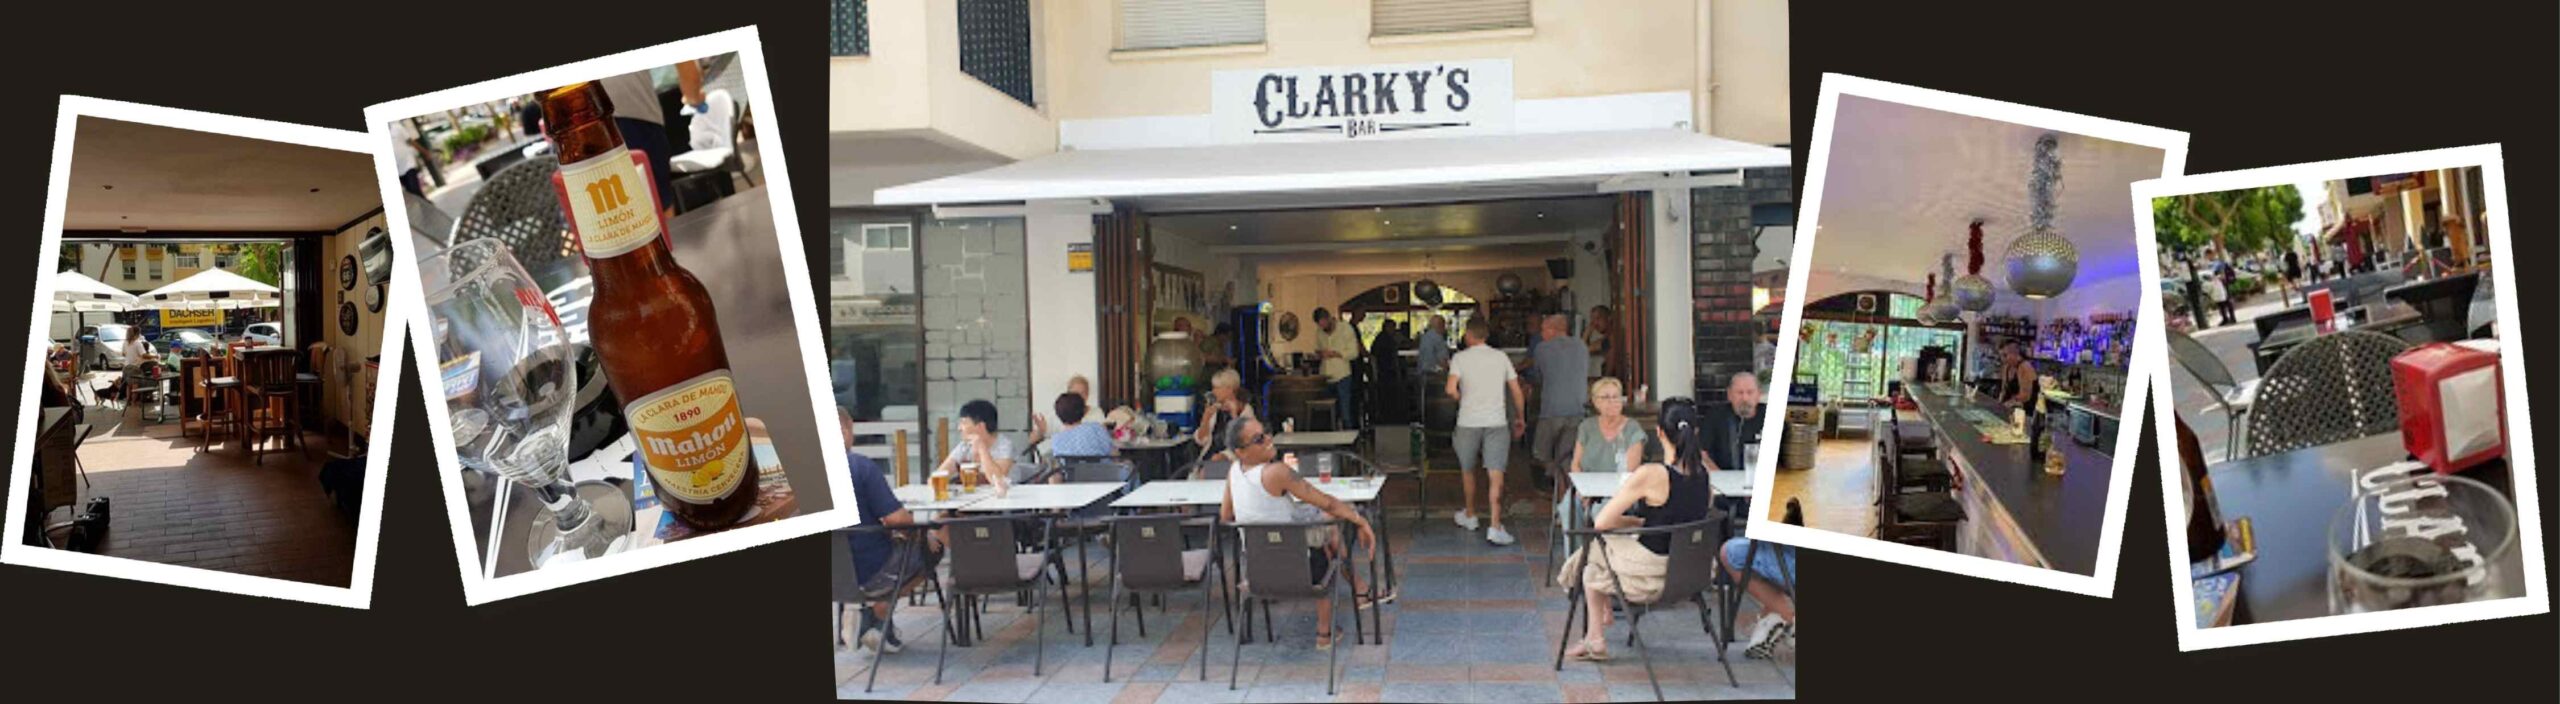 Clarky's Bar